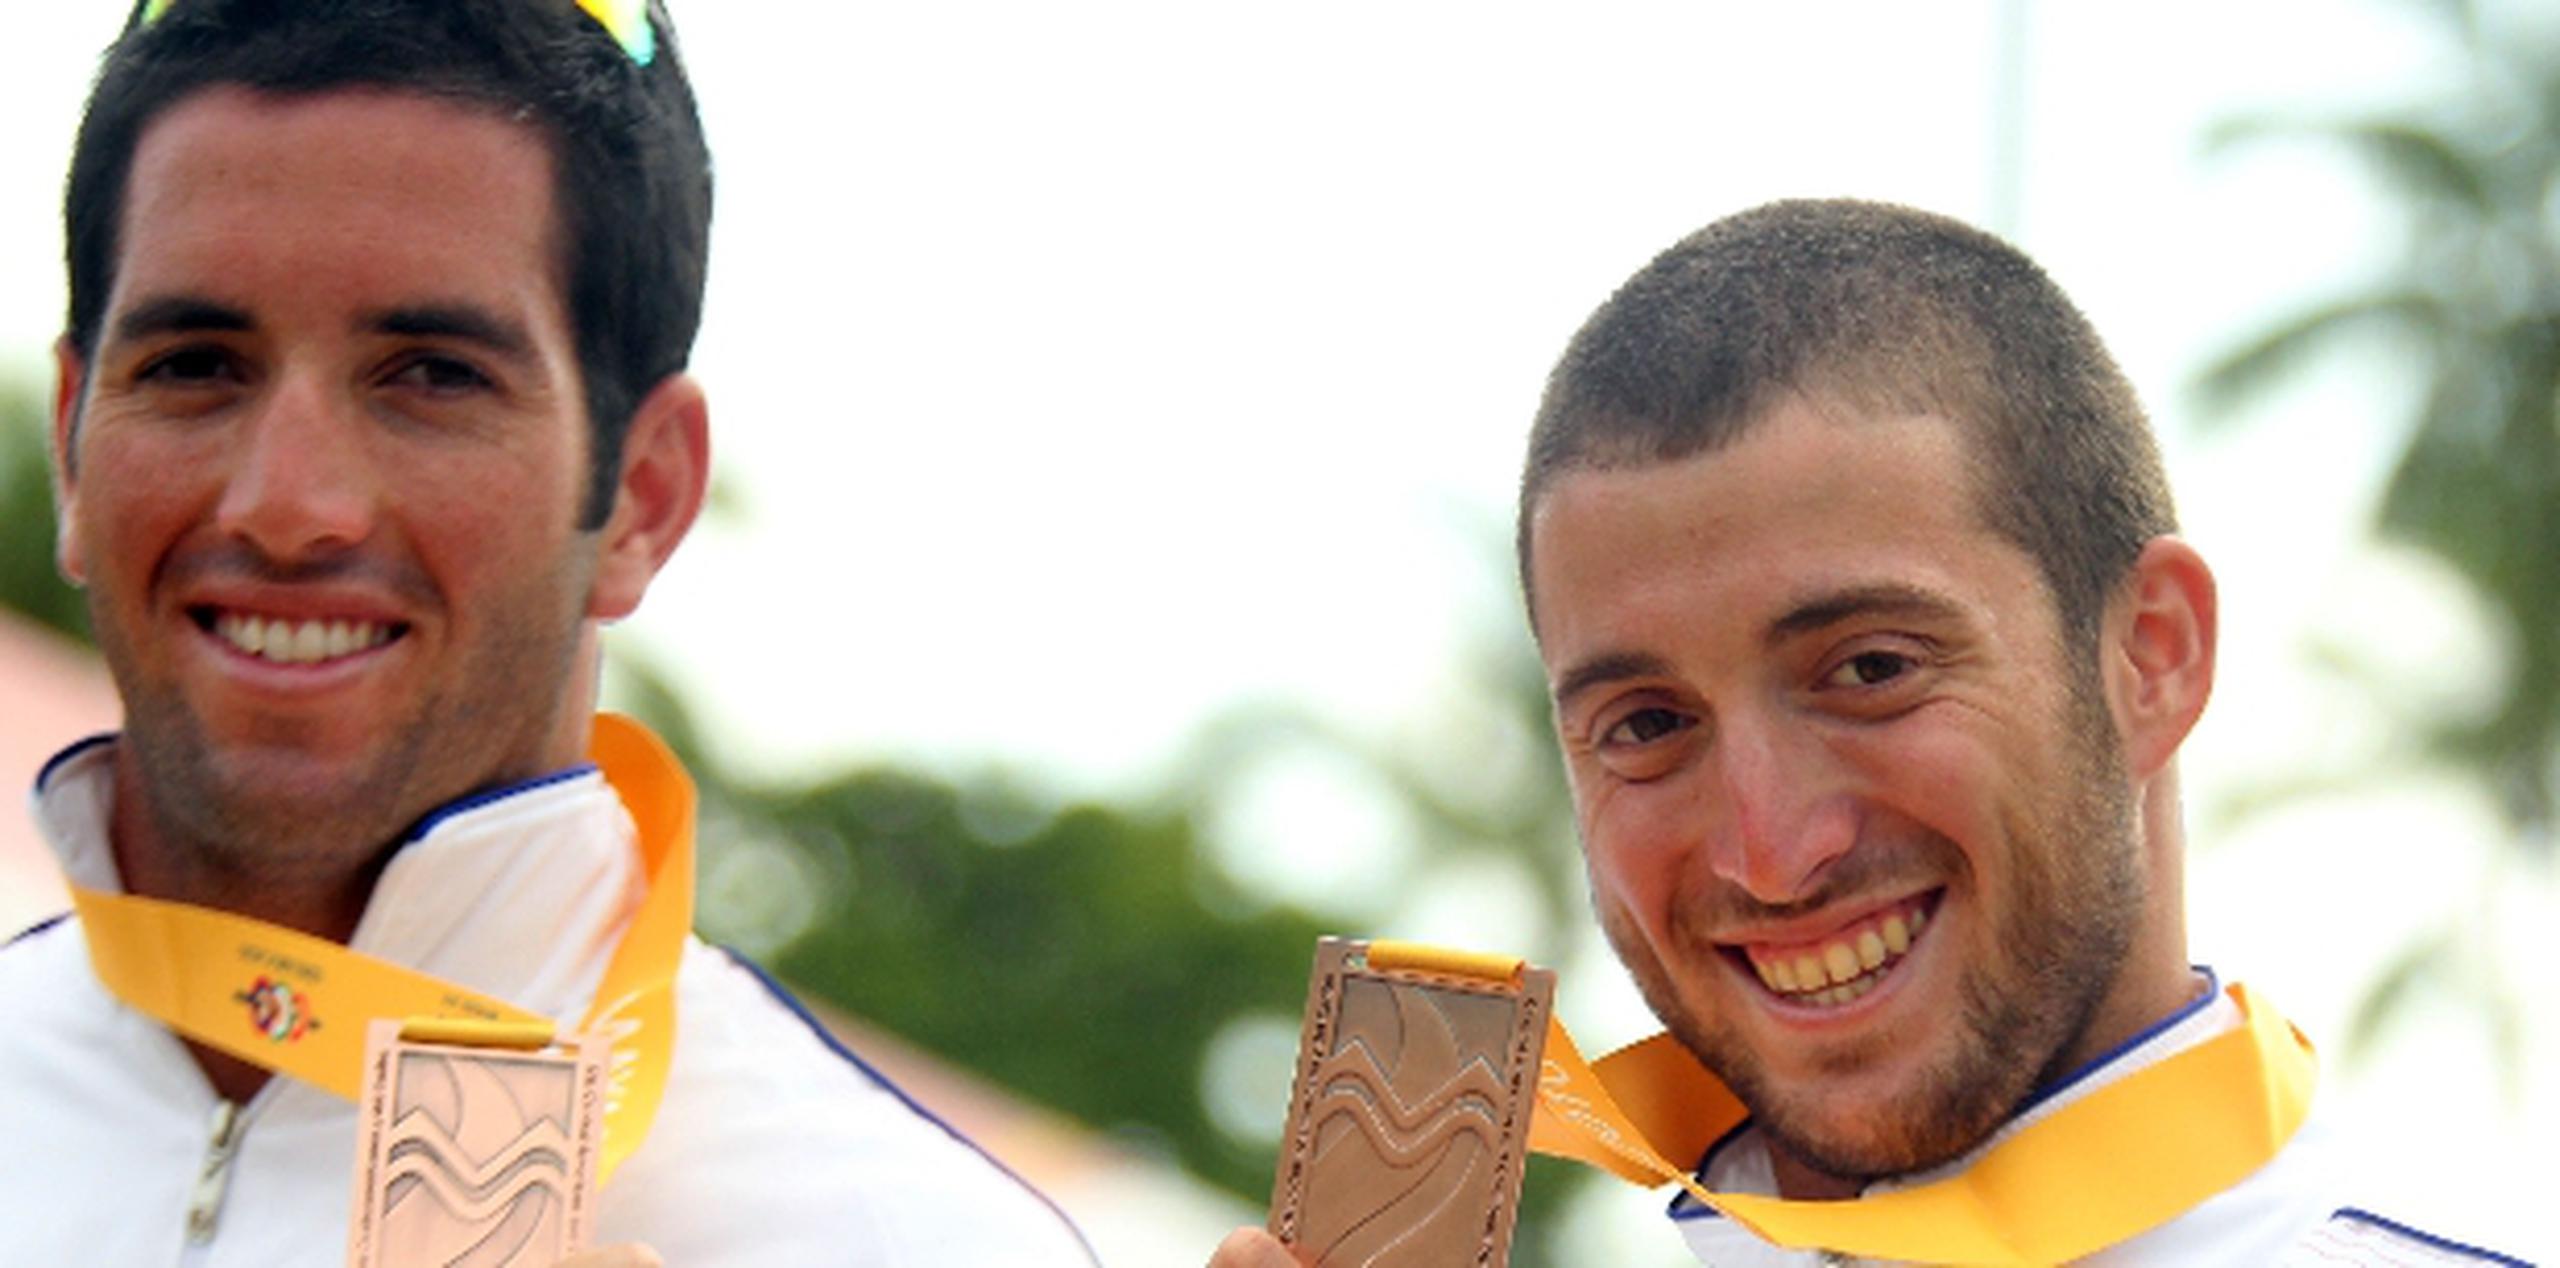 Roberto Rodríguez y Orlando Irizarry jugarán en pareja por primera vez desde que ganaron bronce en los Juegos Centroamericanos y del Caribe Mayagüez 2010. Archivo